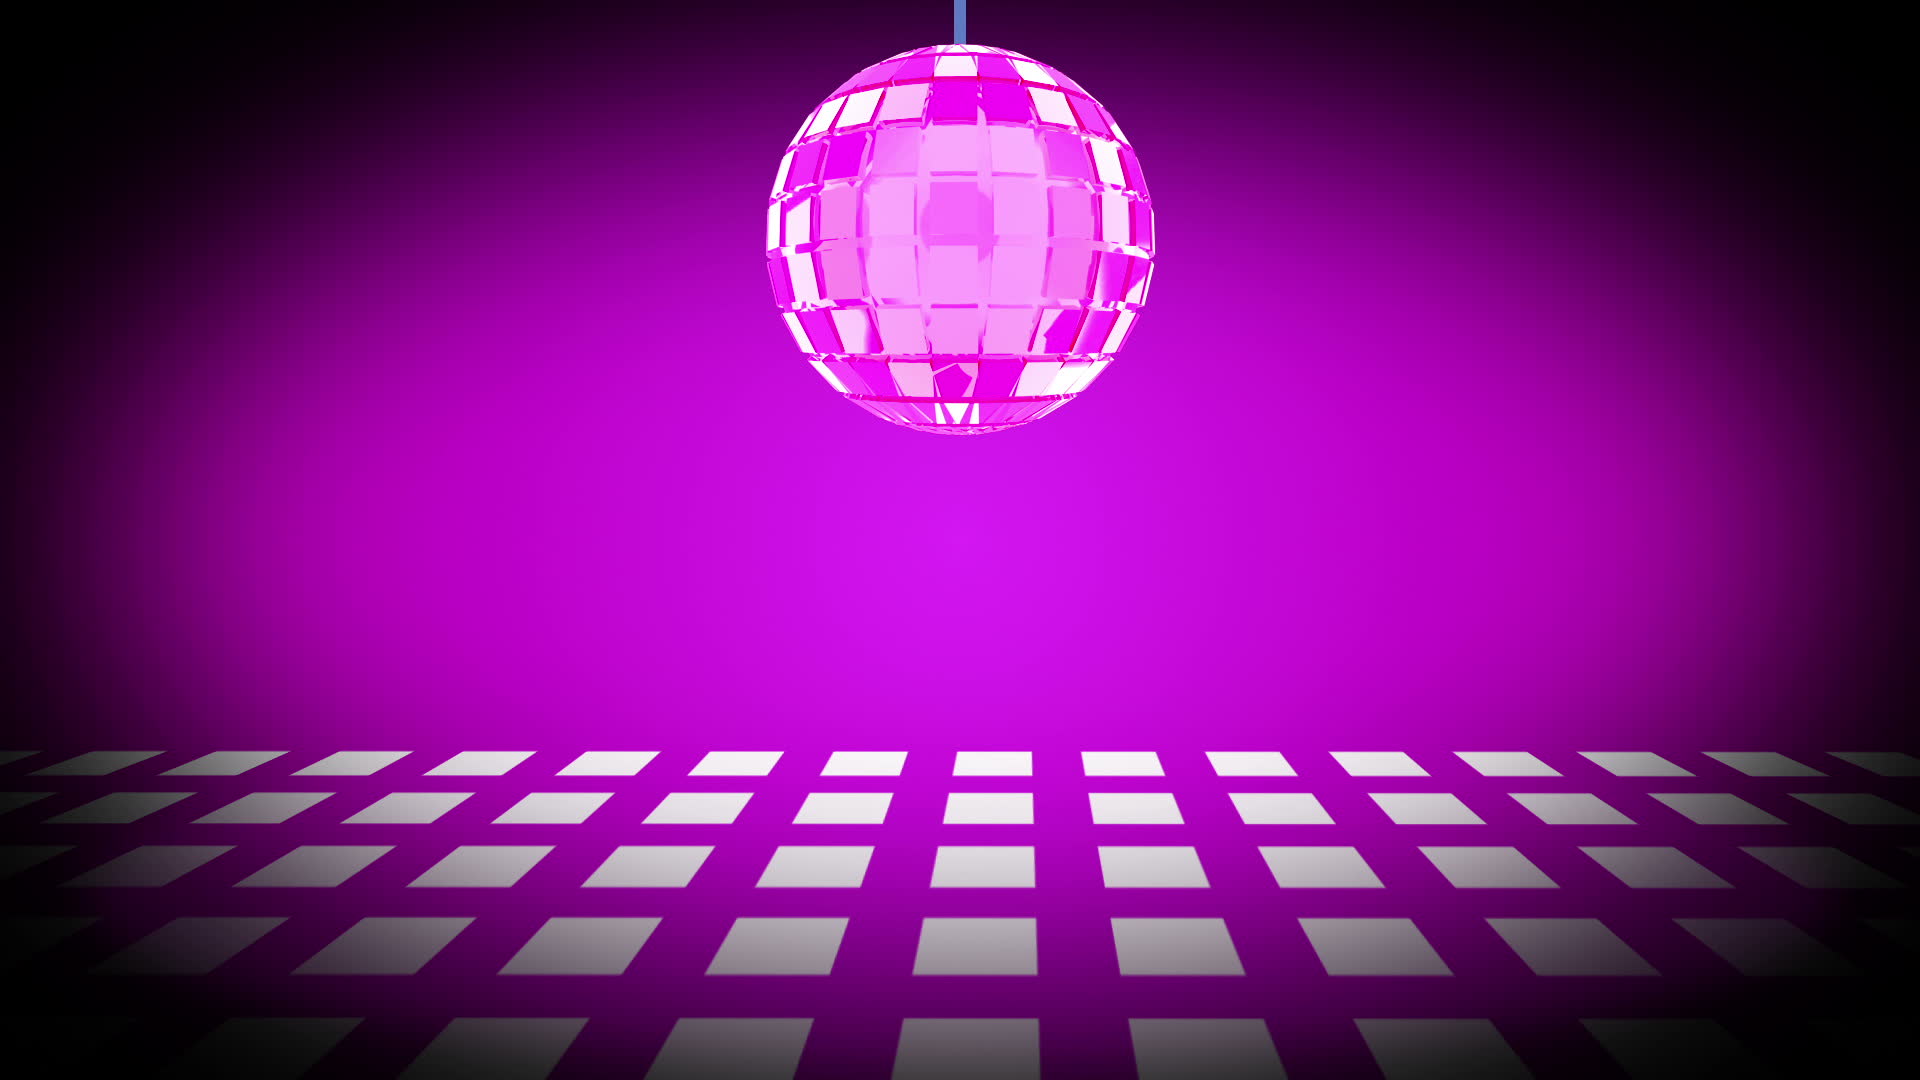 Free download Dance Floor Background Clipart for Desktop, Mobile & Tabl...